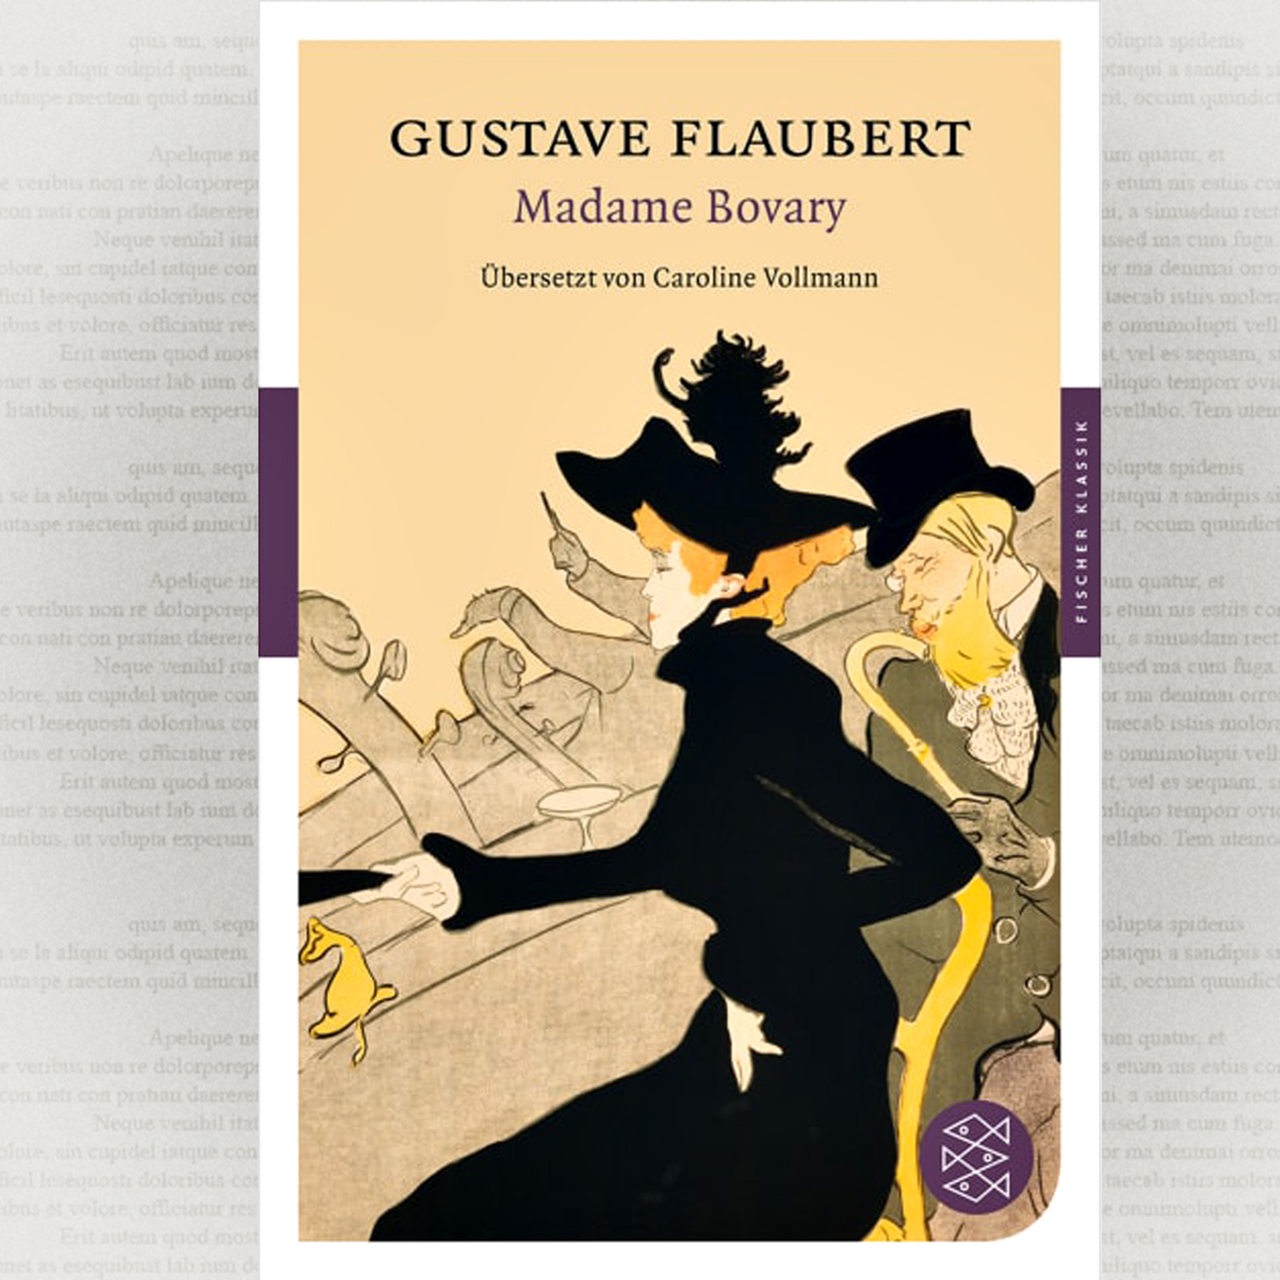 Buchcover von Gustave Flaubert "Madame Bovary"